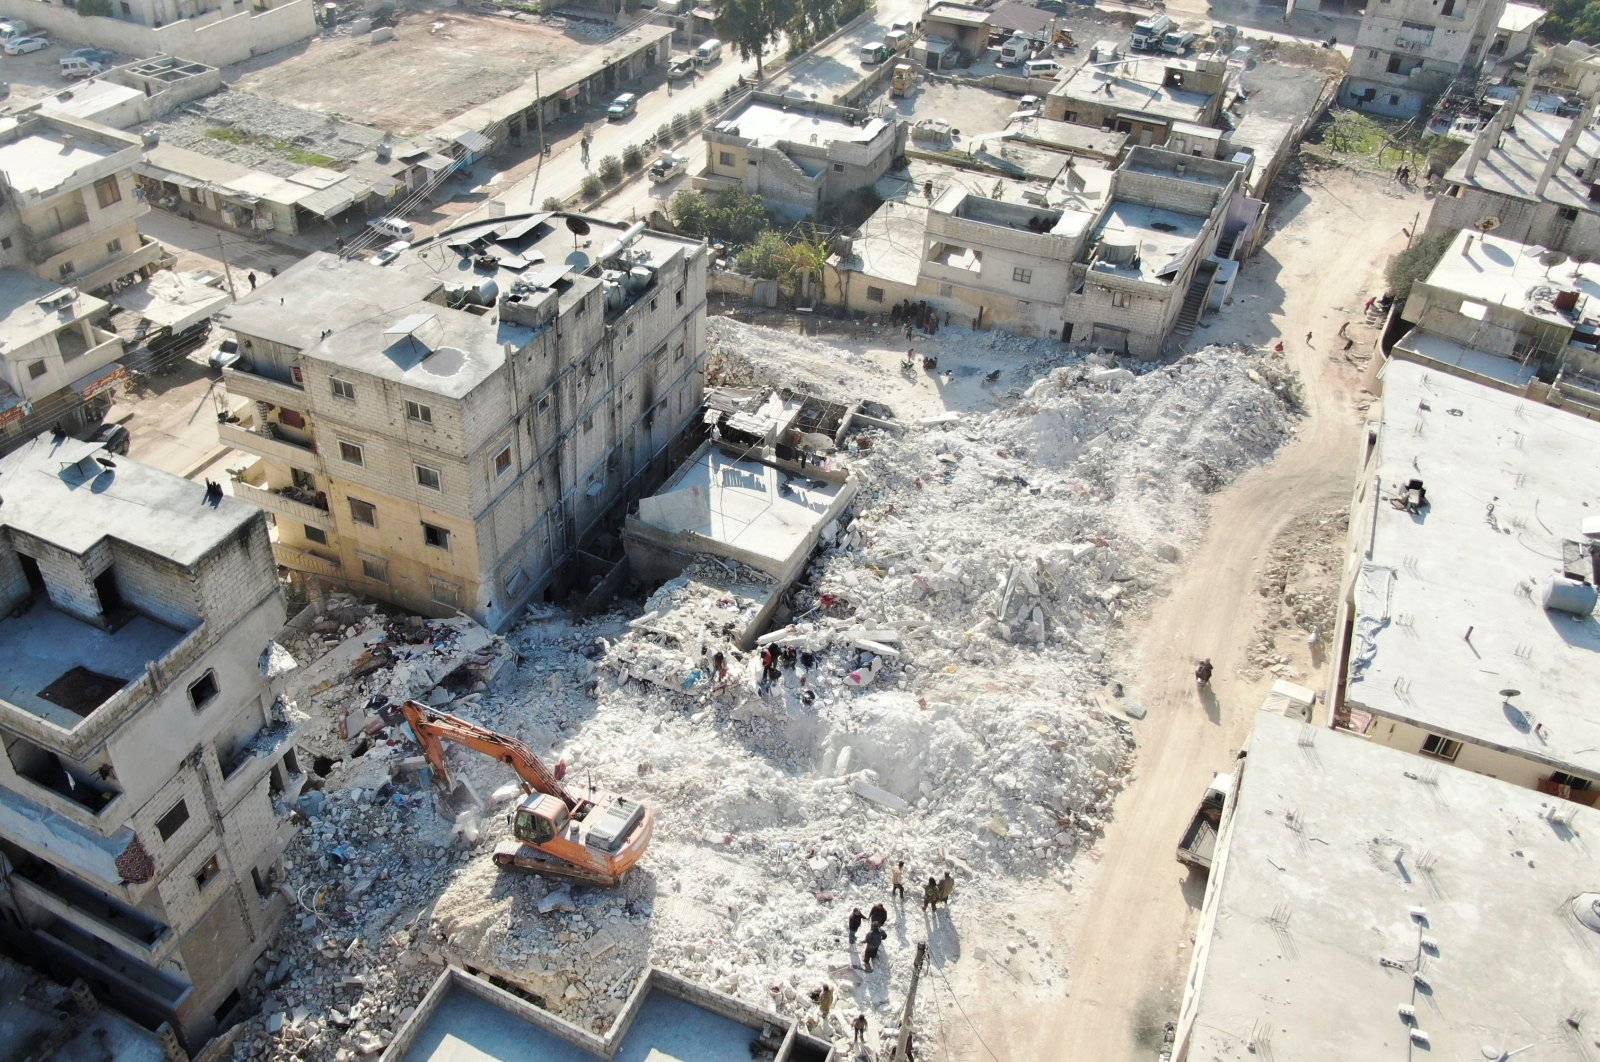 DK PBB membahas situasi di Suriah setelah gempa bumi